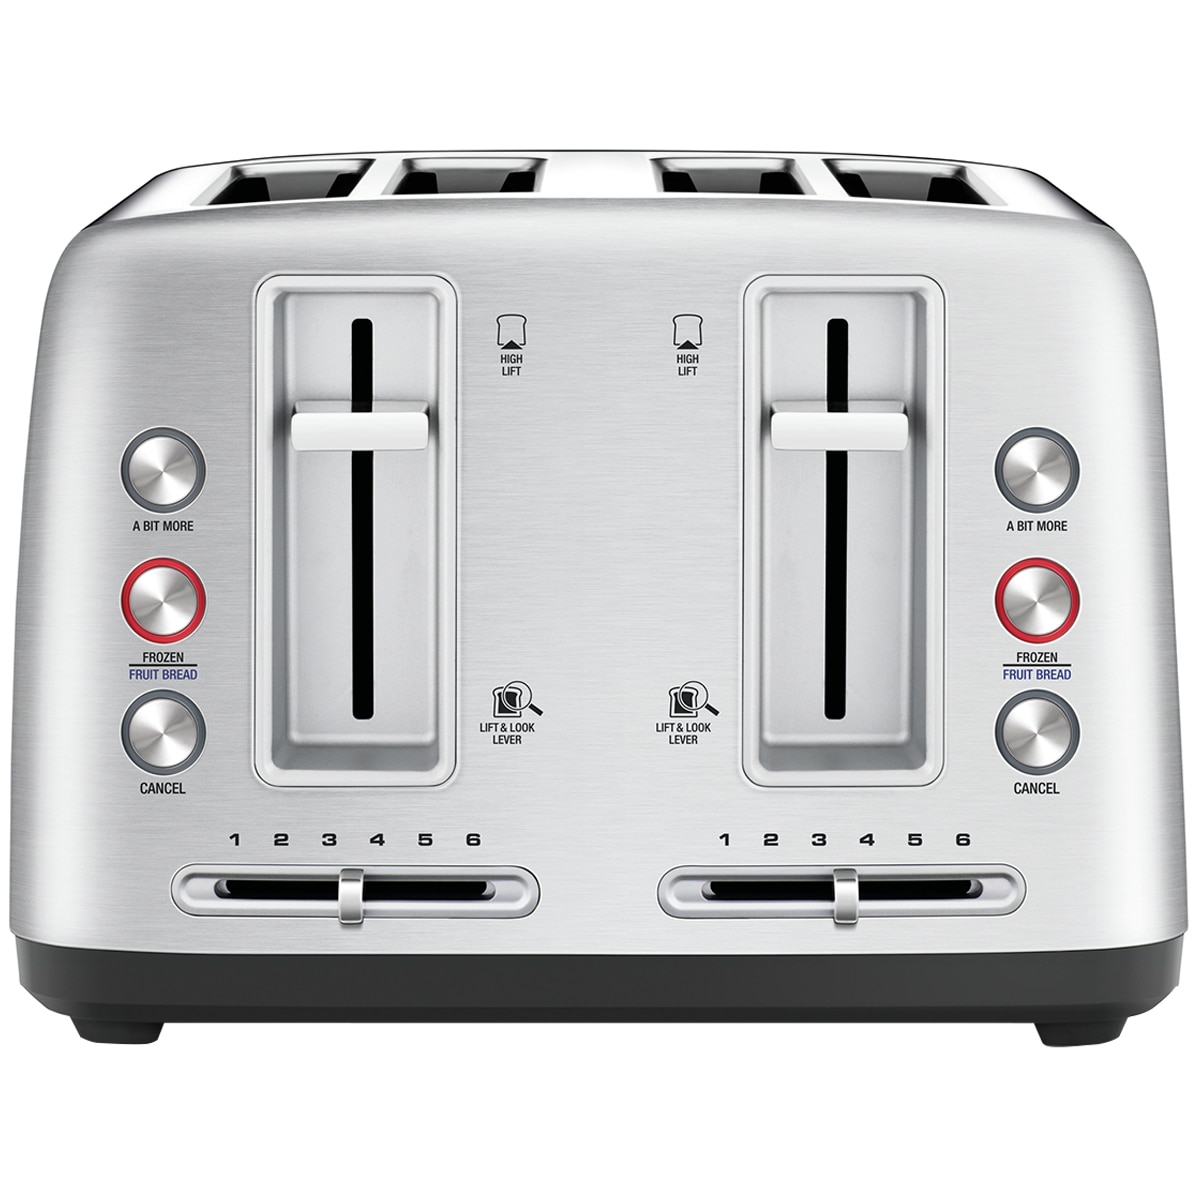 Breville Toast Control 4 Slice Toaster Costco Australia